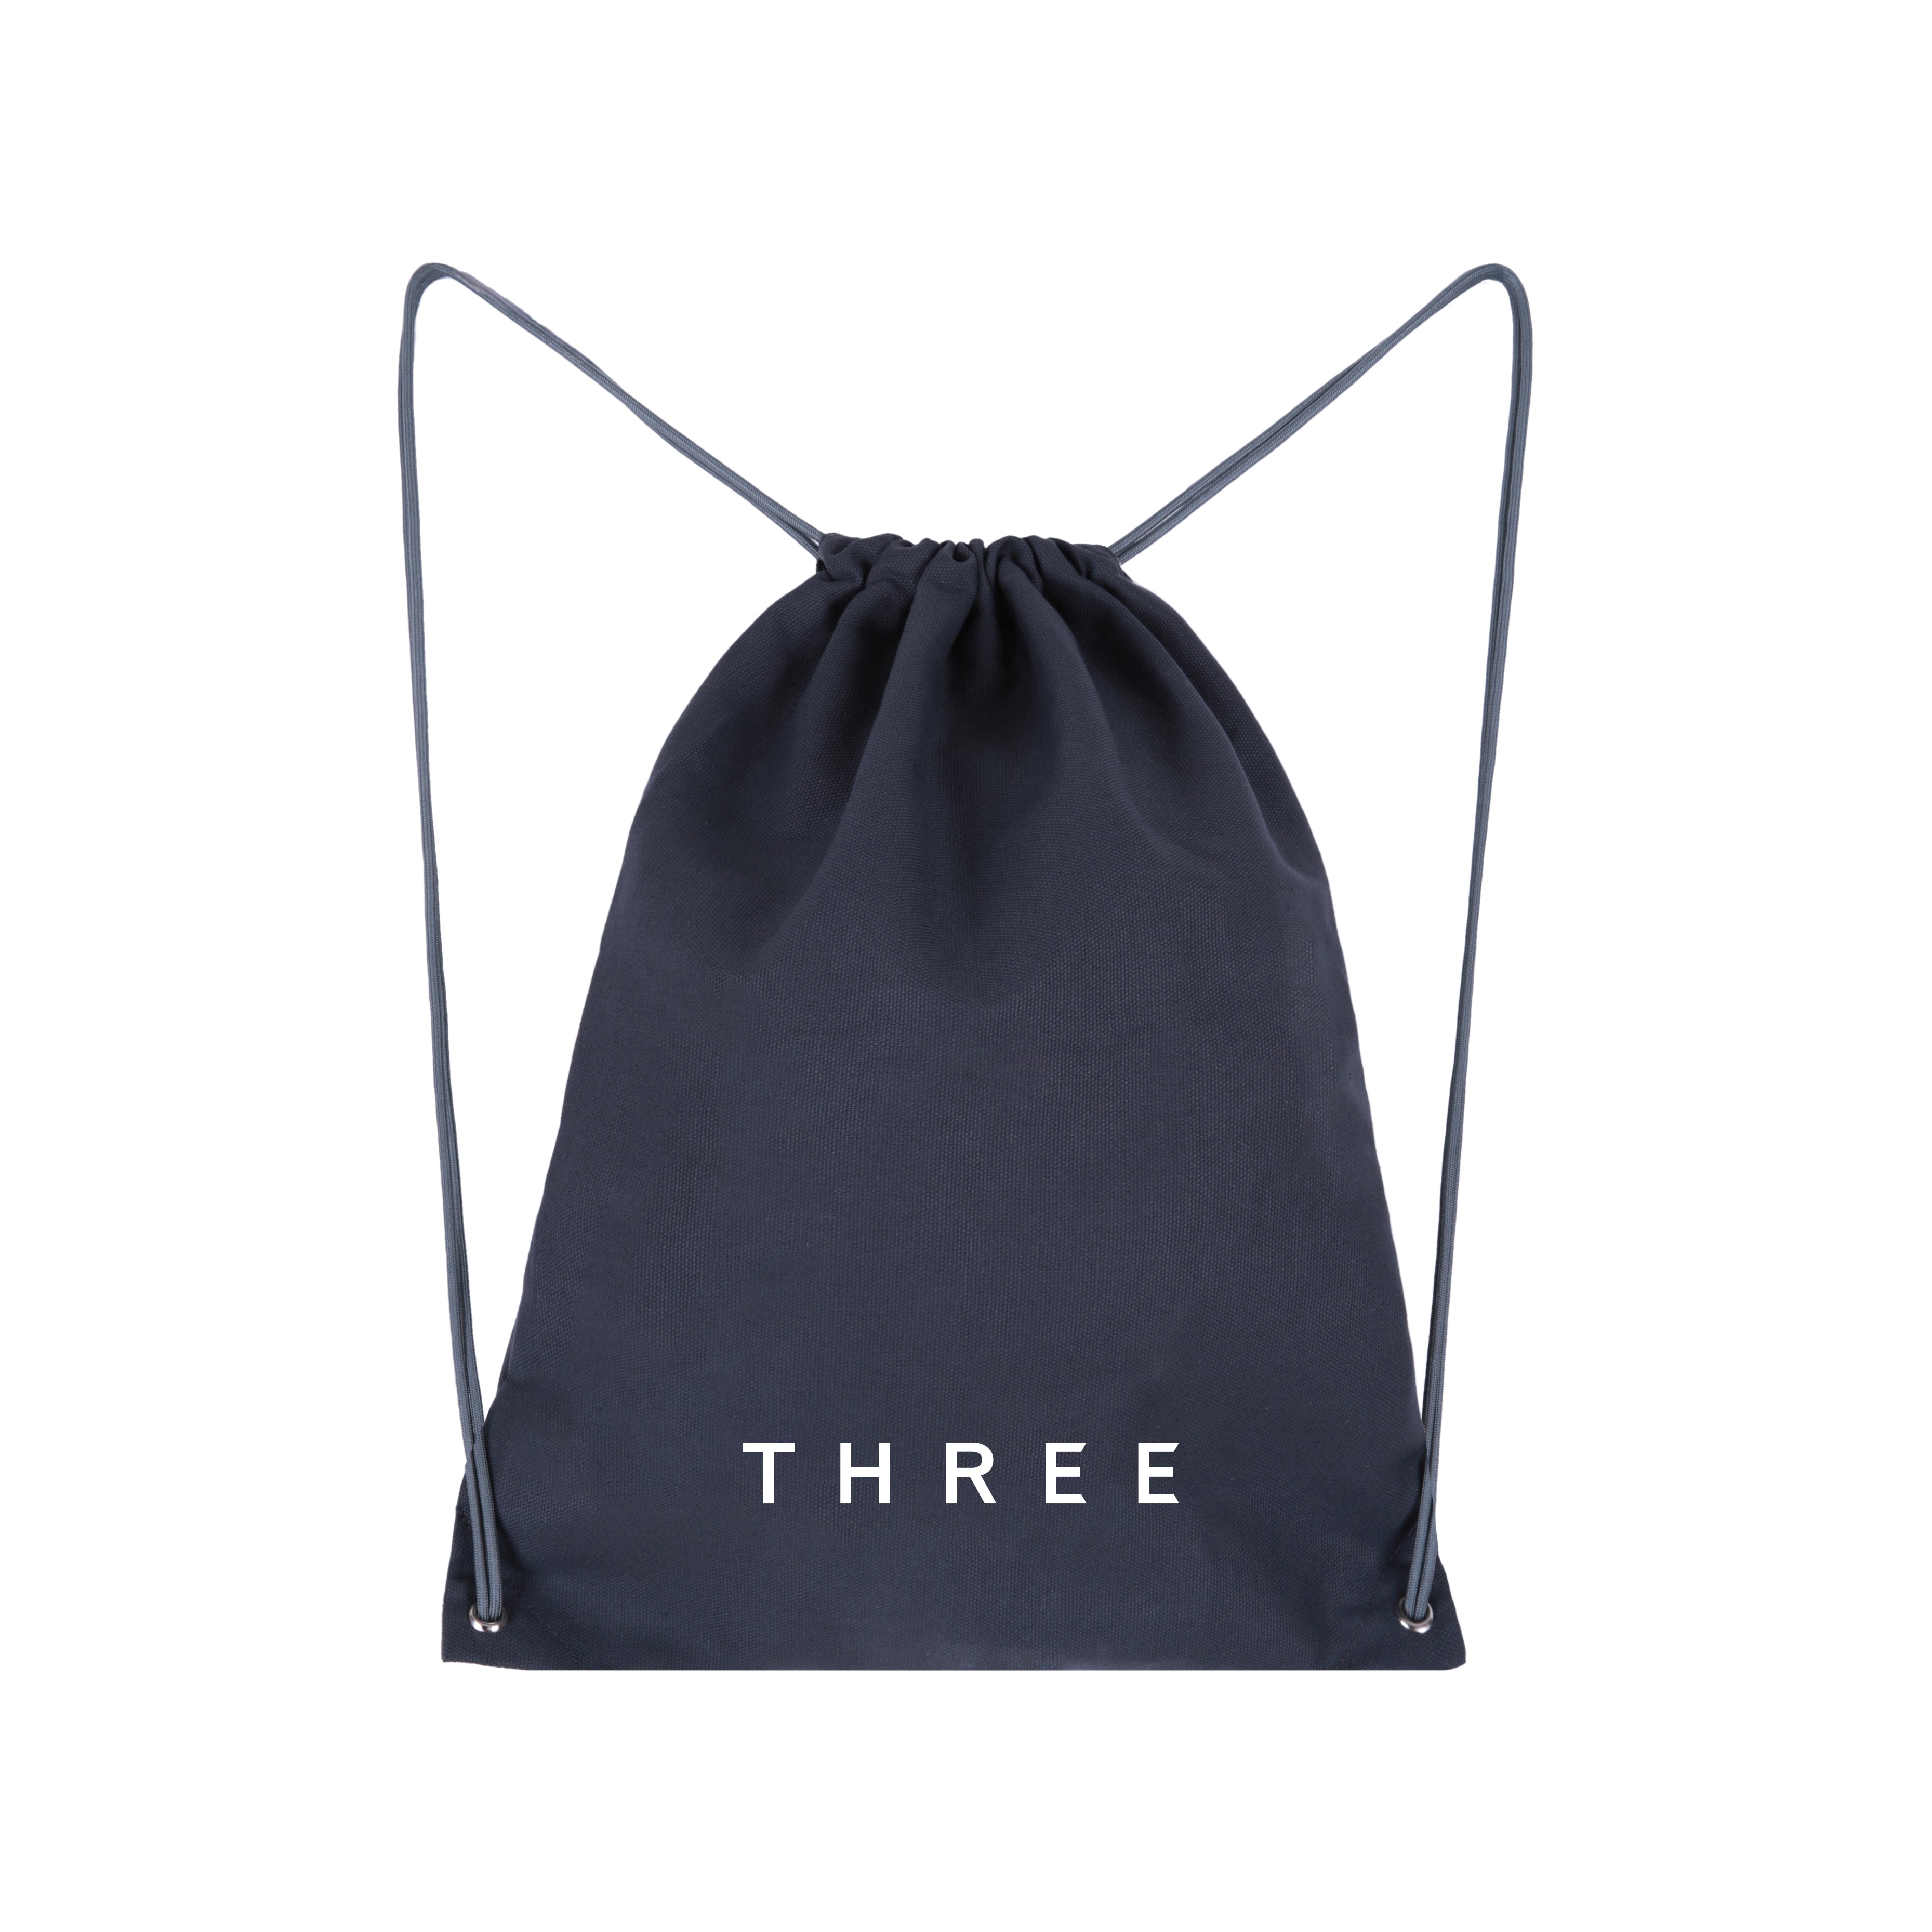 THREE Shoes Bag